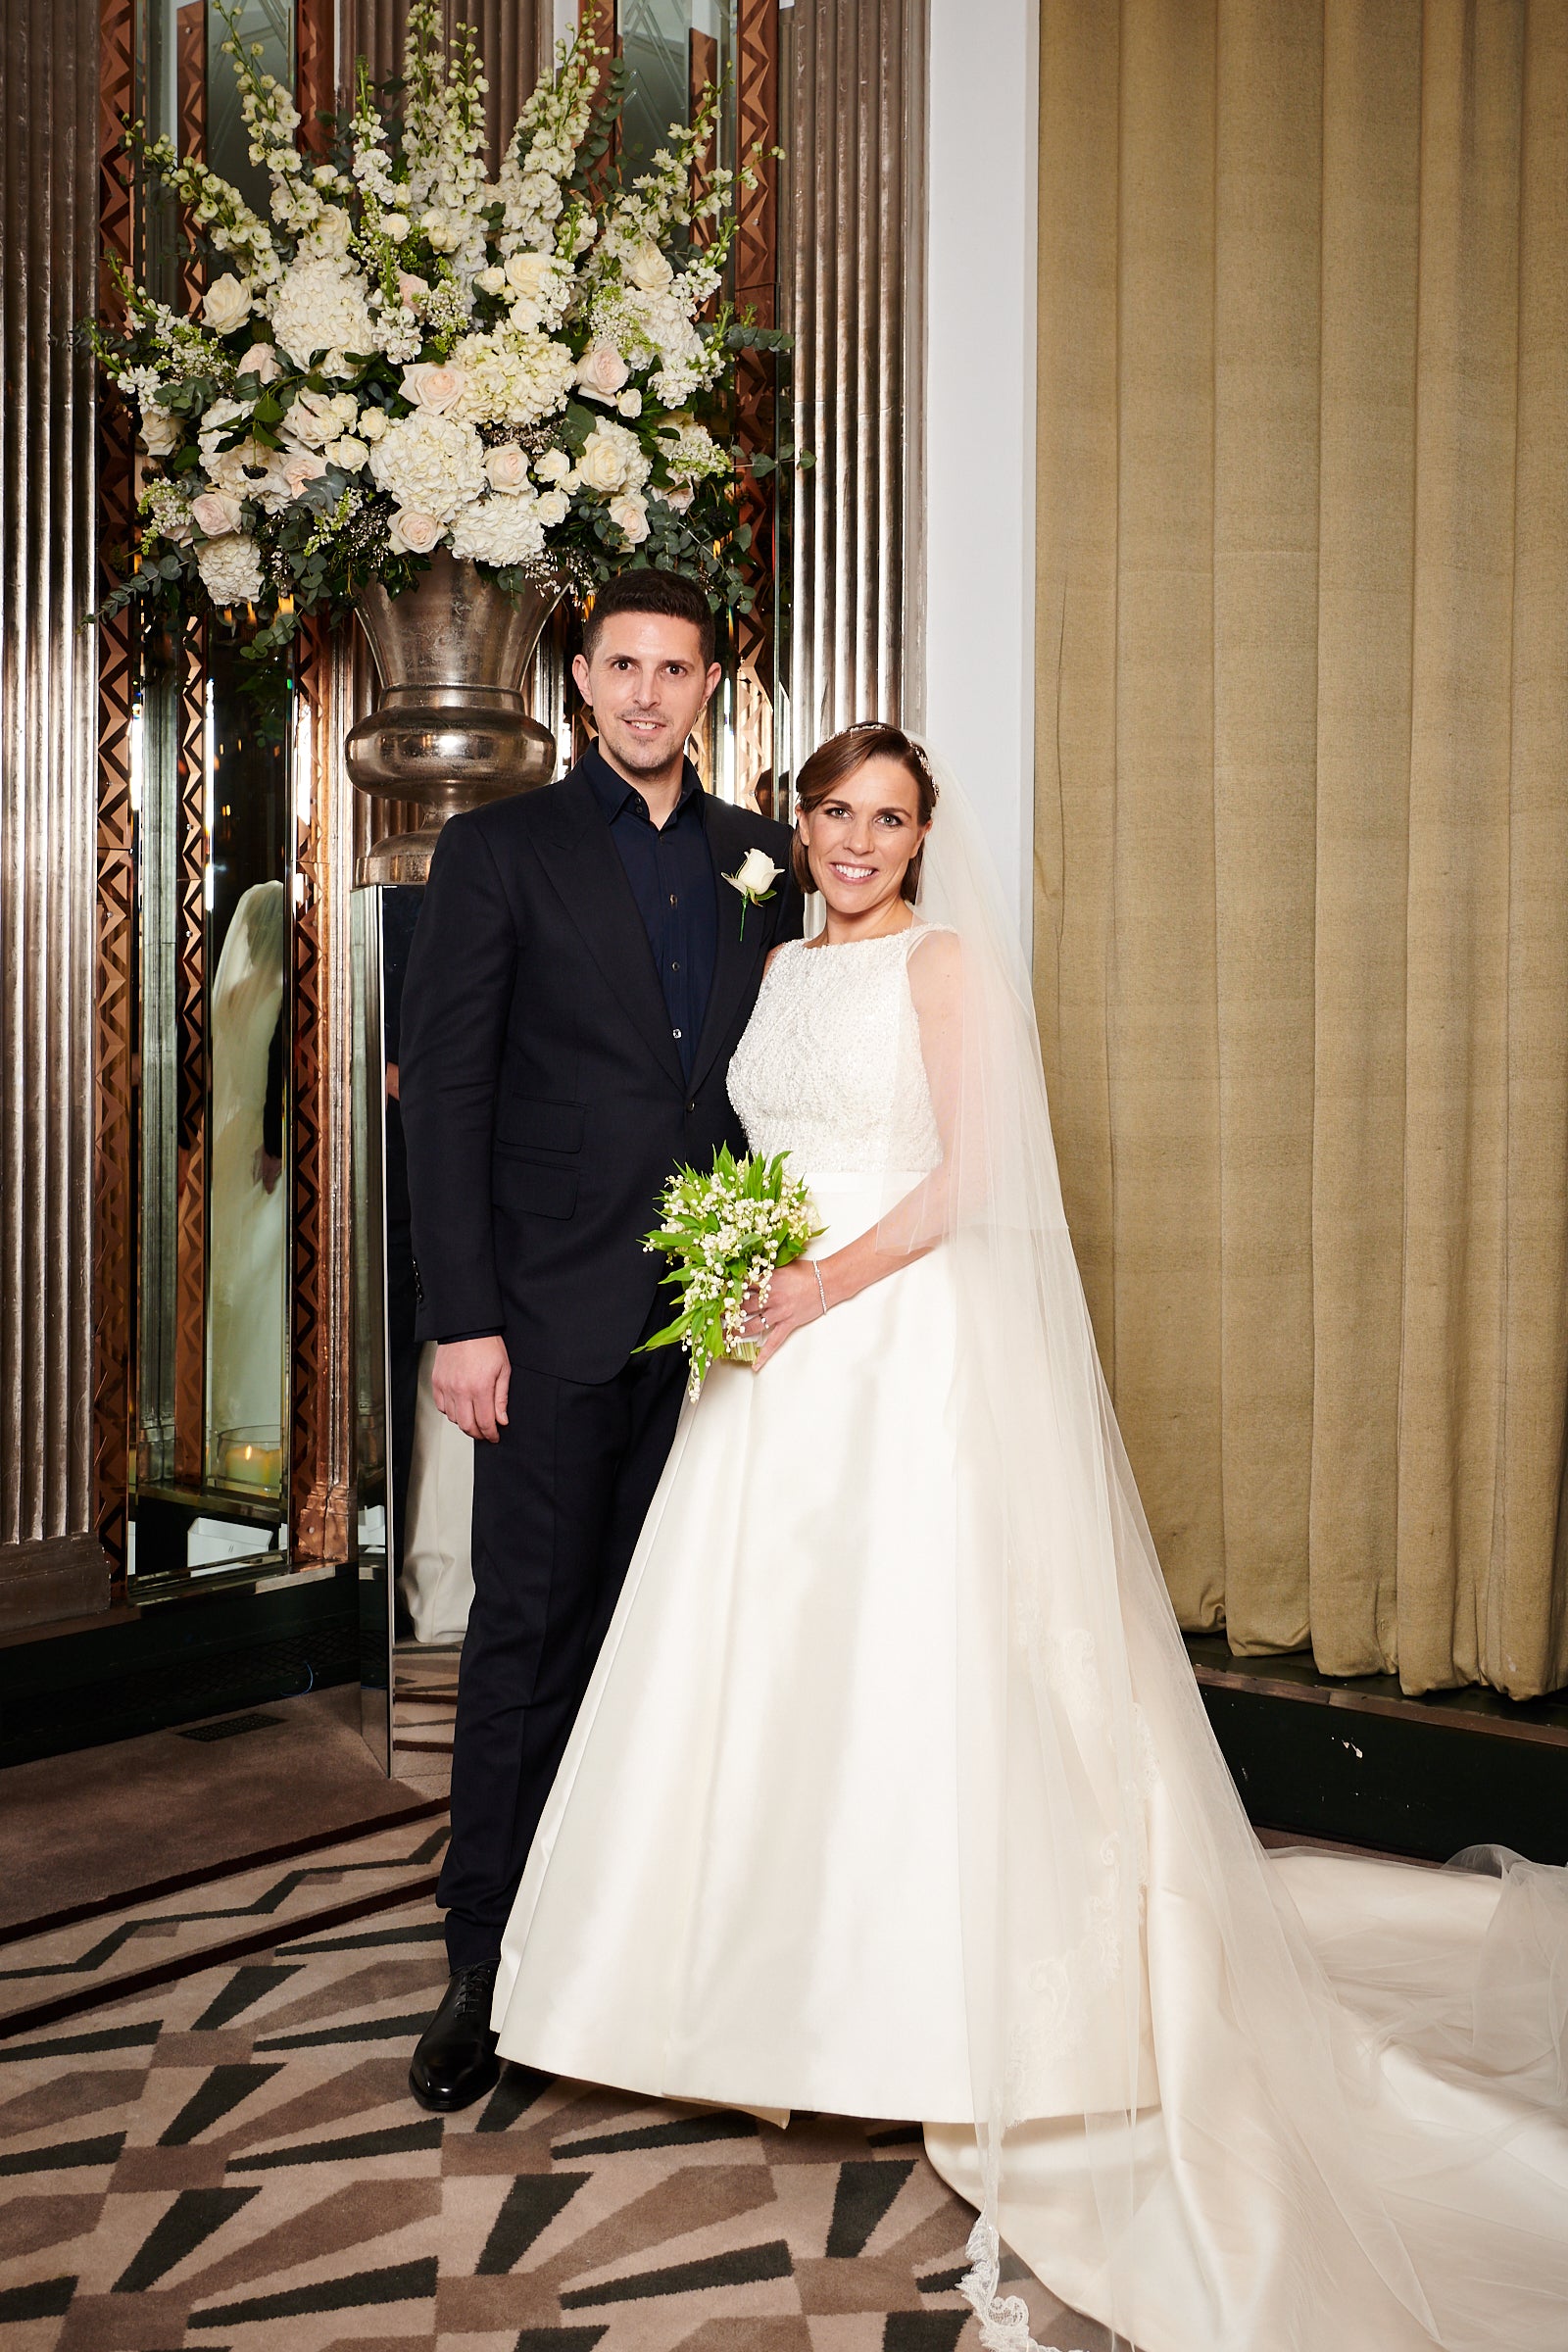 Claire Williams Formula 1 in bespoke designer wedding gown by Caroline Castigliano